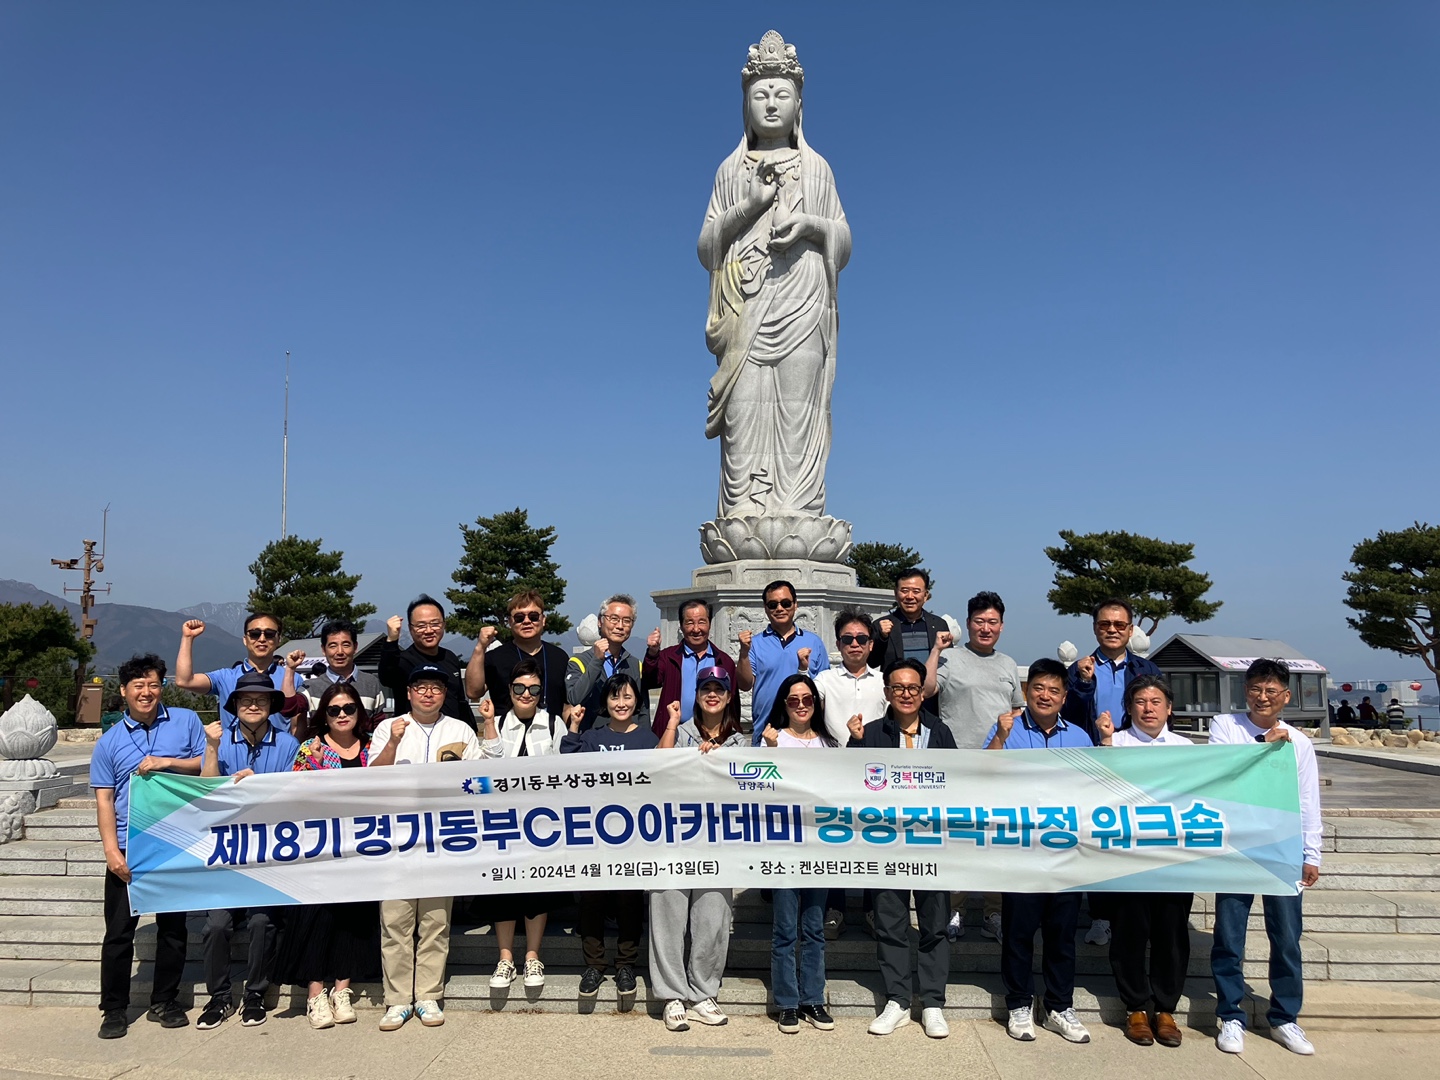 제18기 경기동부CEO아카데미 경영전략과정 입학식 및 워크숍 개최